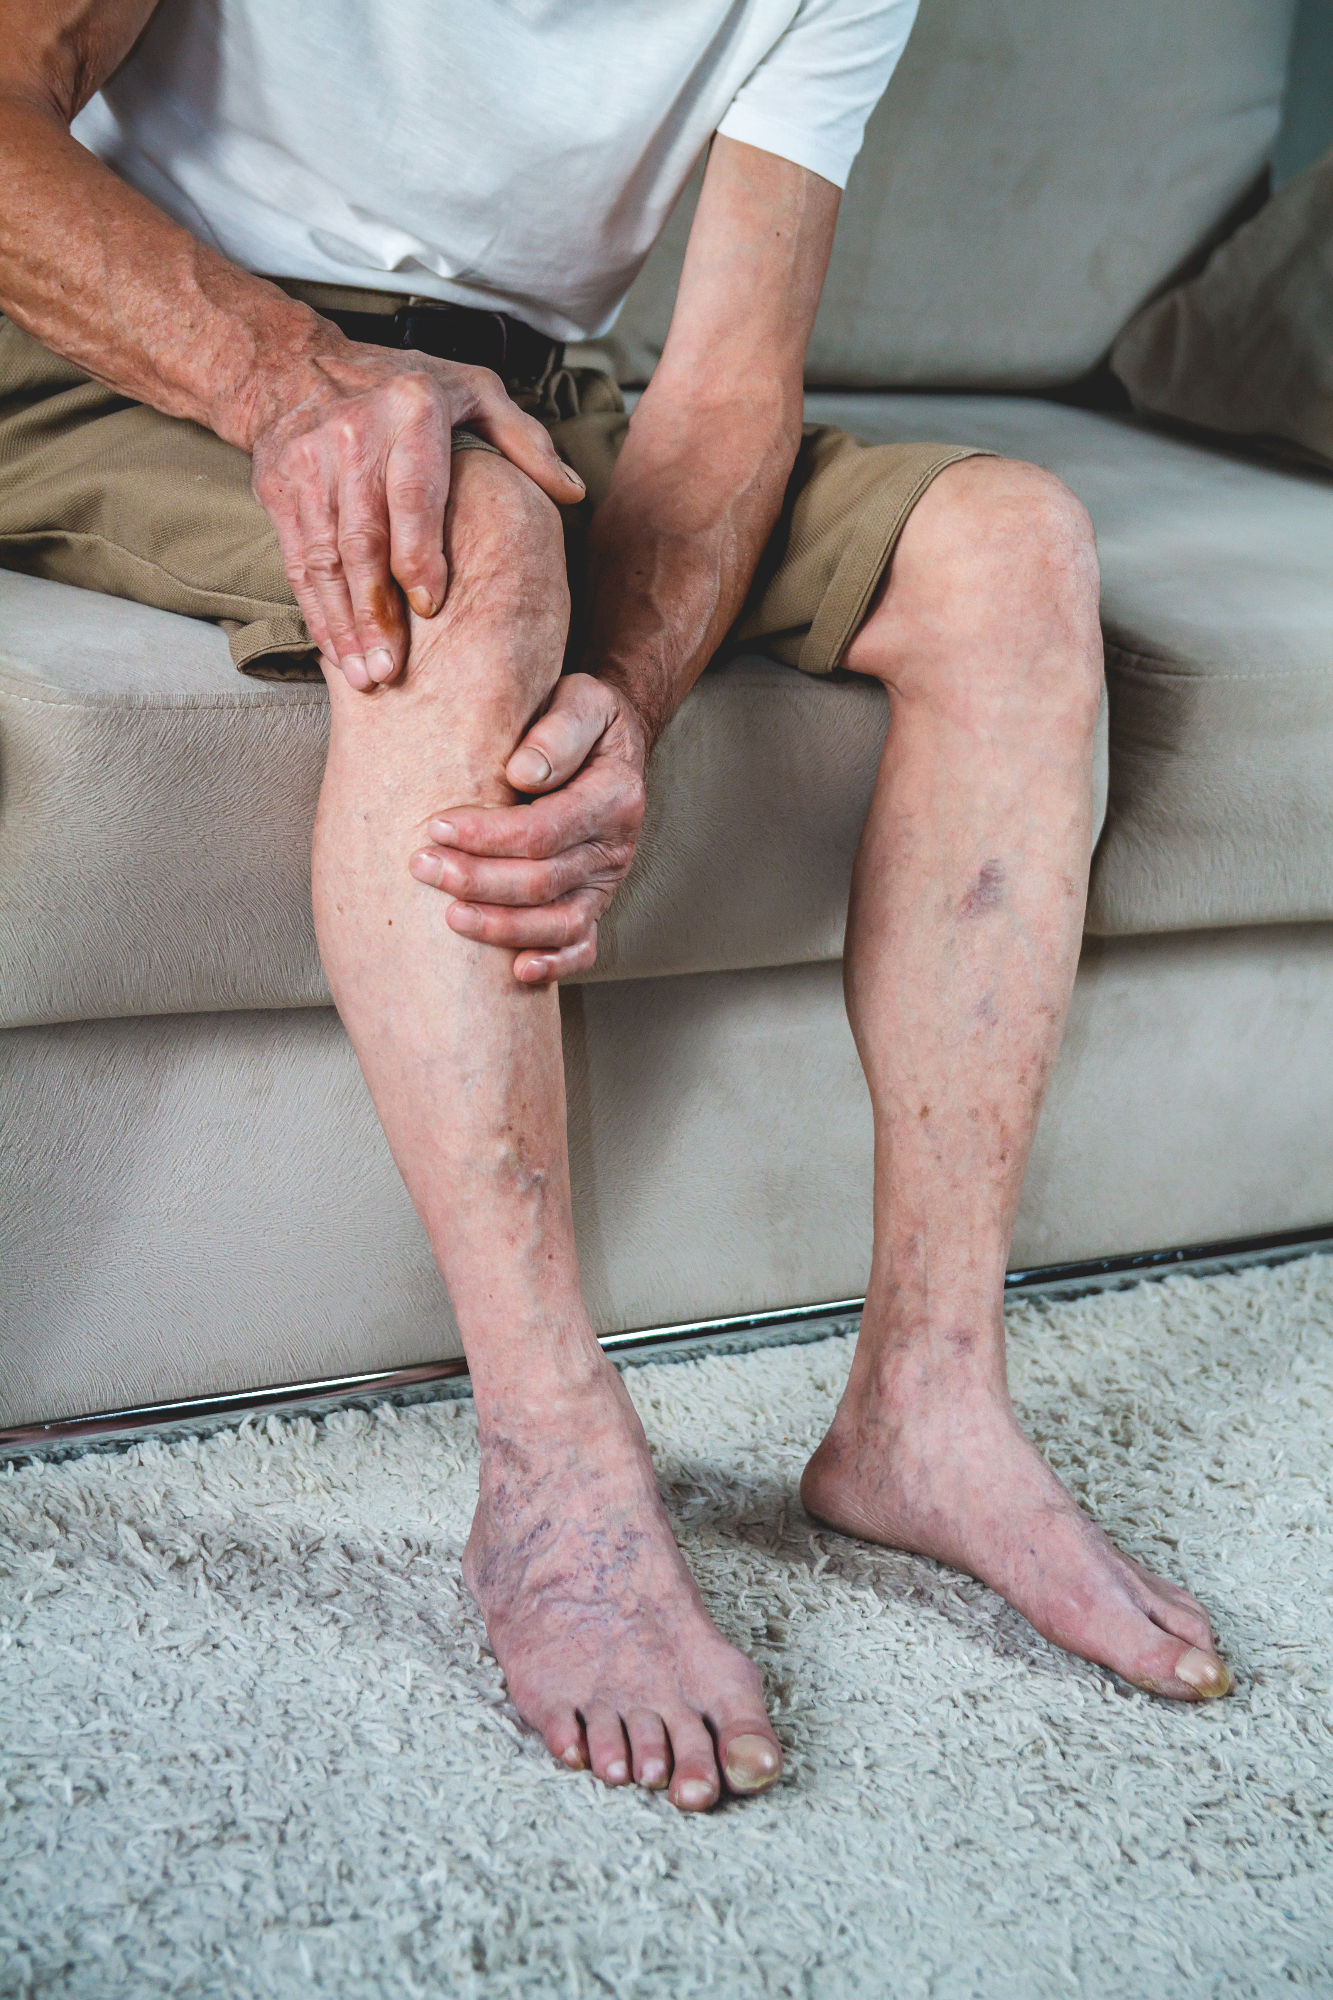 Revmatoidni artritis je nekaj, kar lahko doleti marsikoga